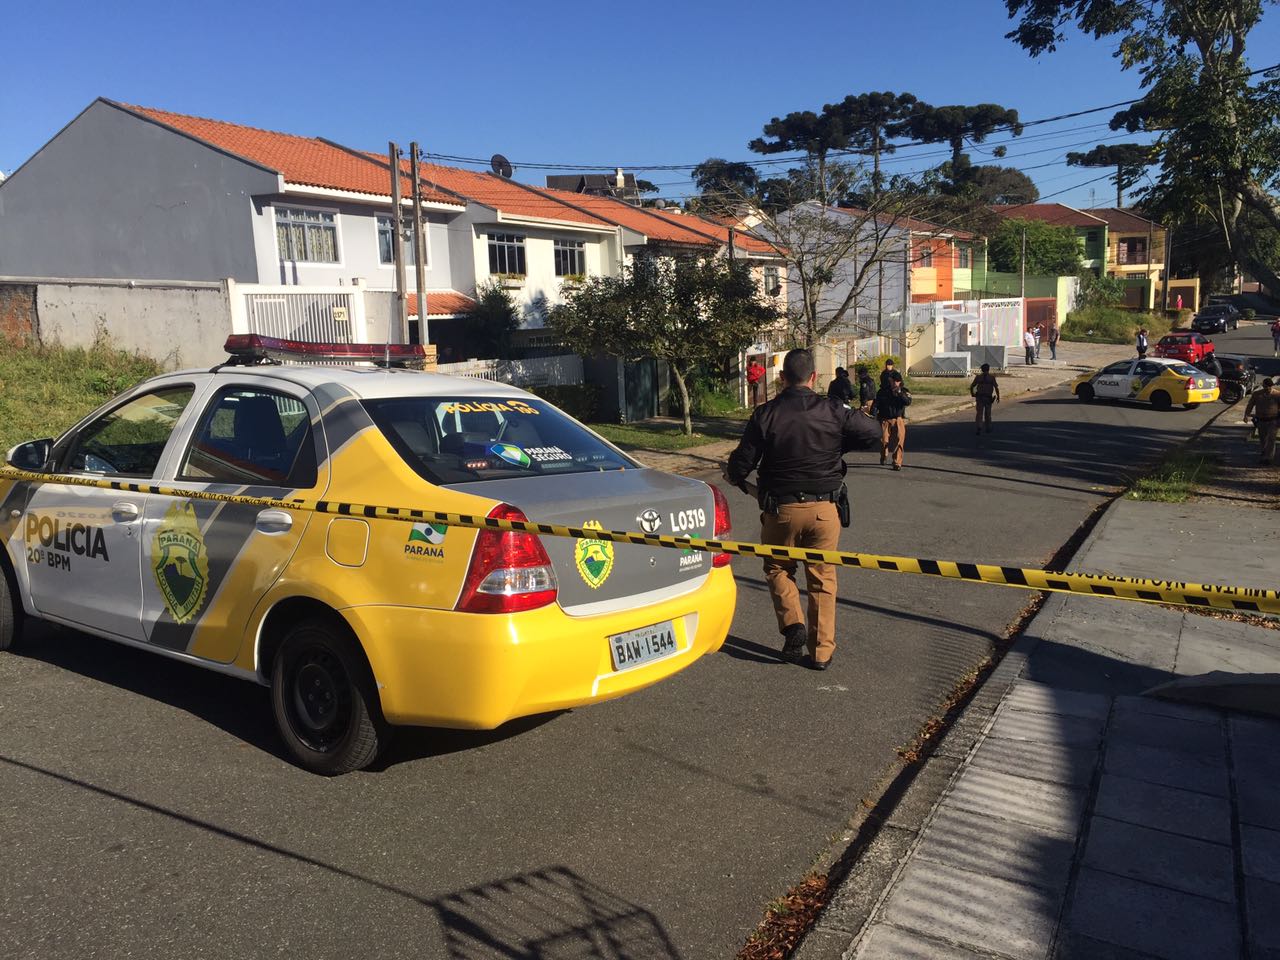  PM reage a tentativa de assalto e mata assaltante no bairro Boa Vista